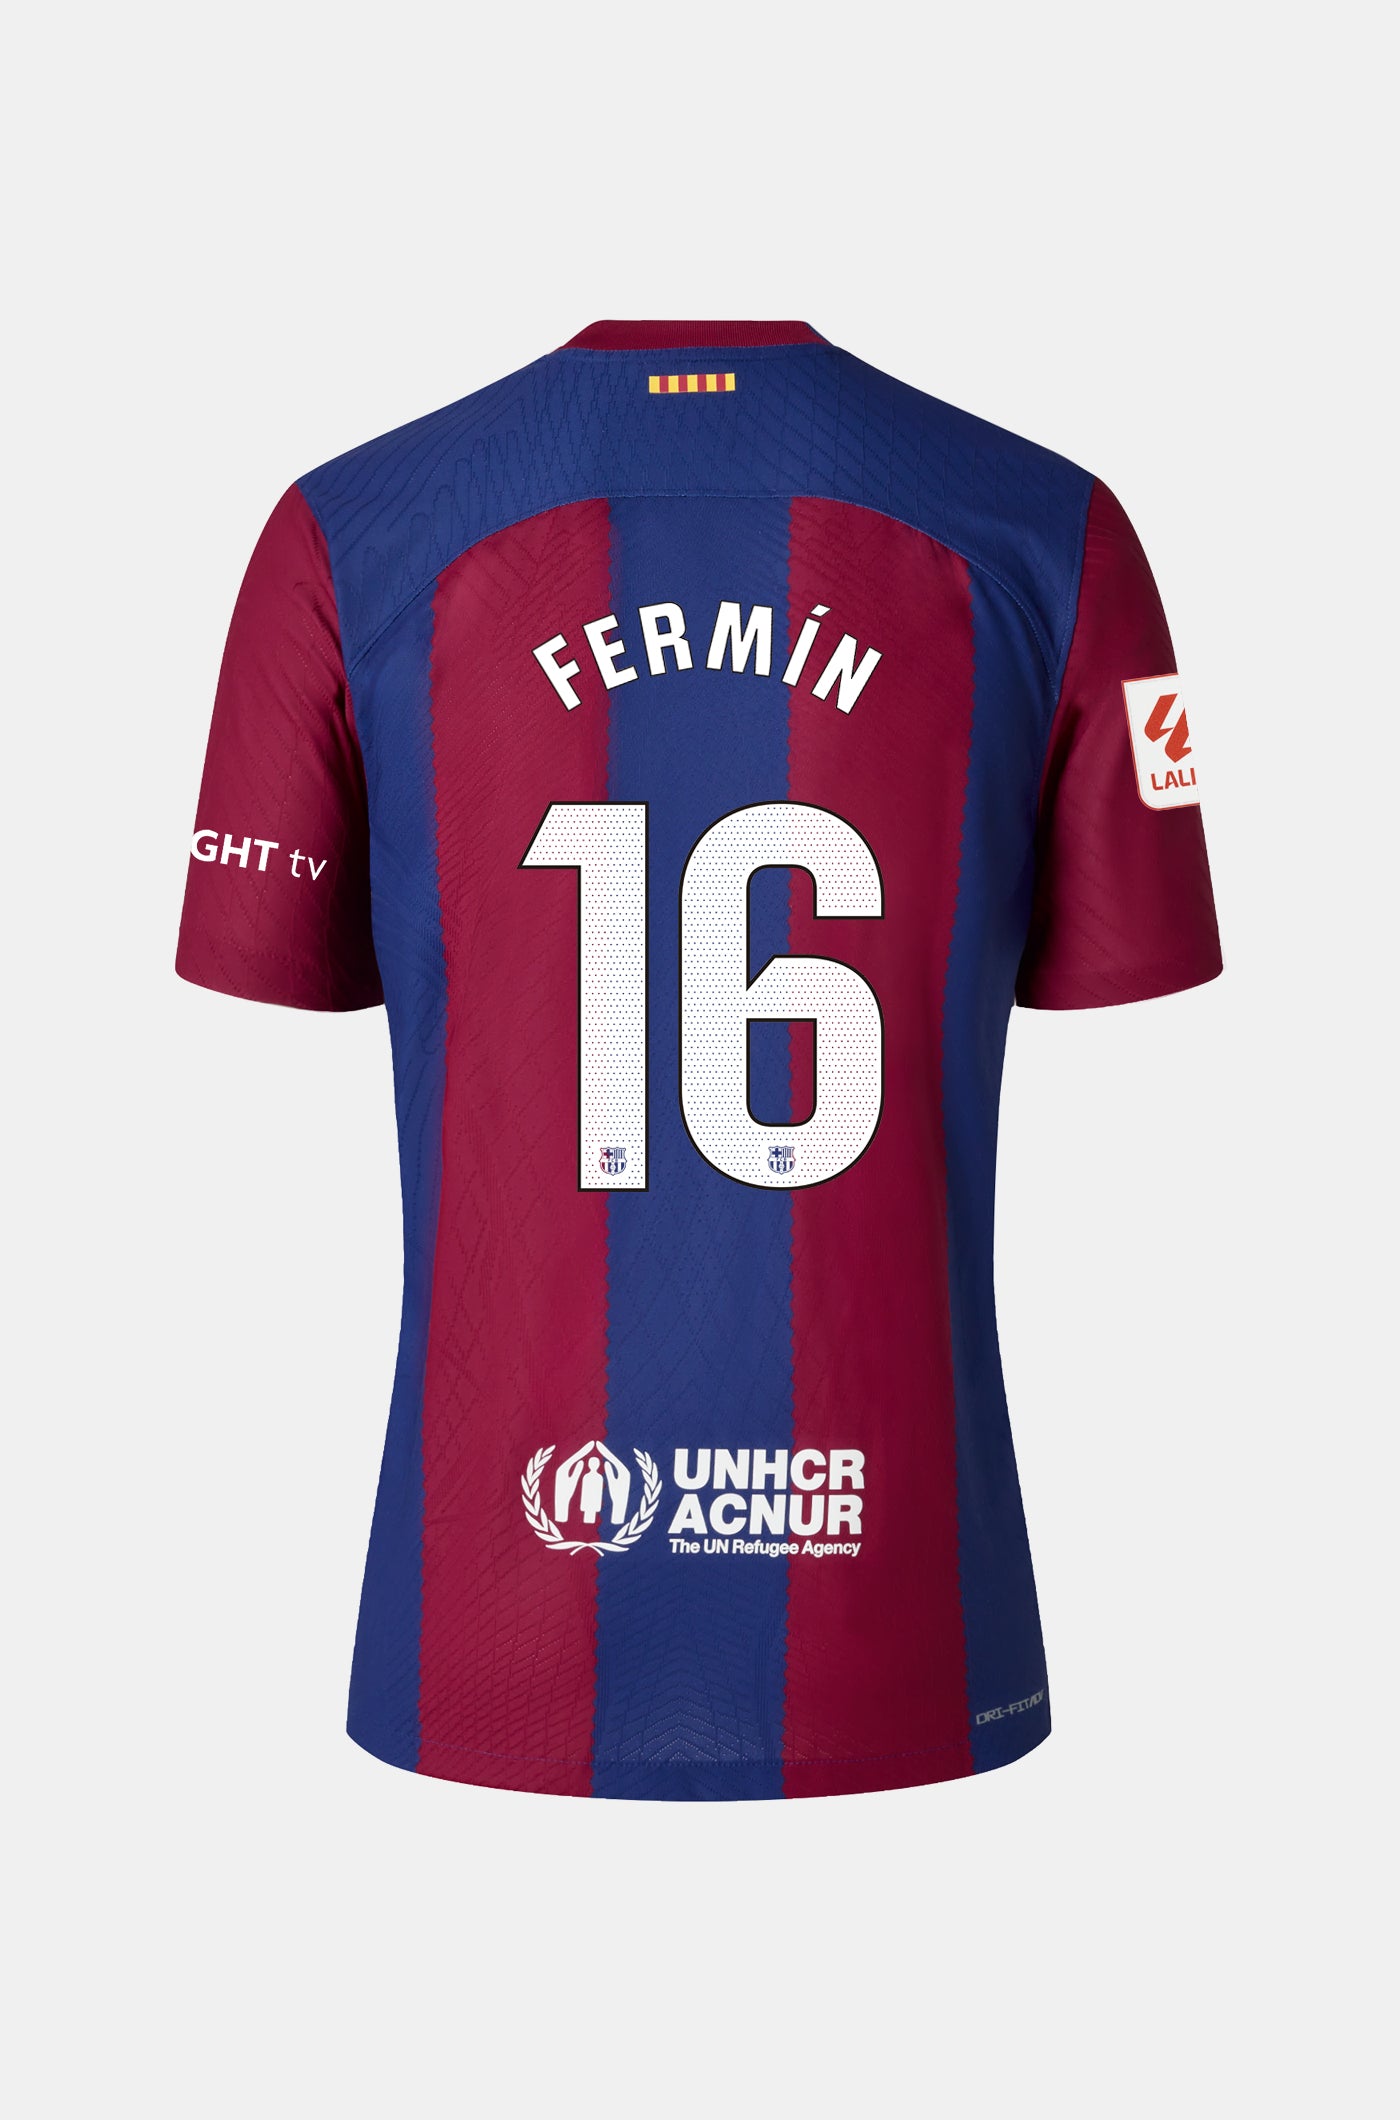 LFP FC Barcelona home shirt 23/24 - Women - FERMÍN